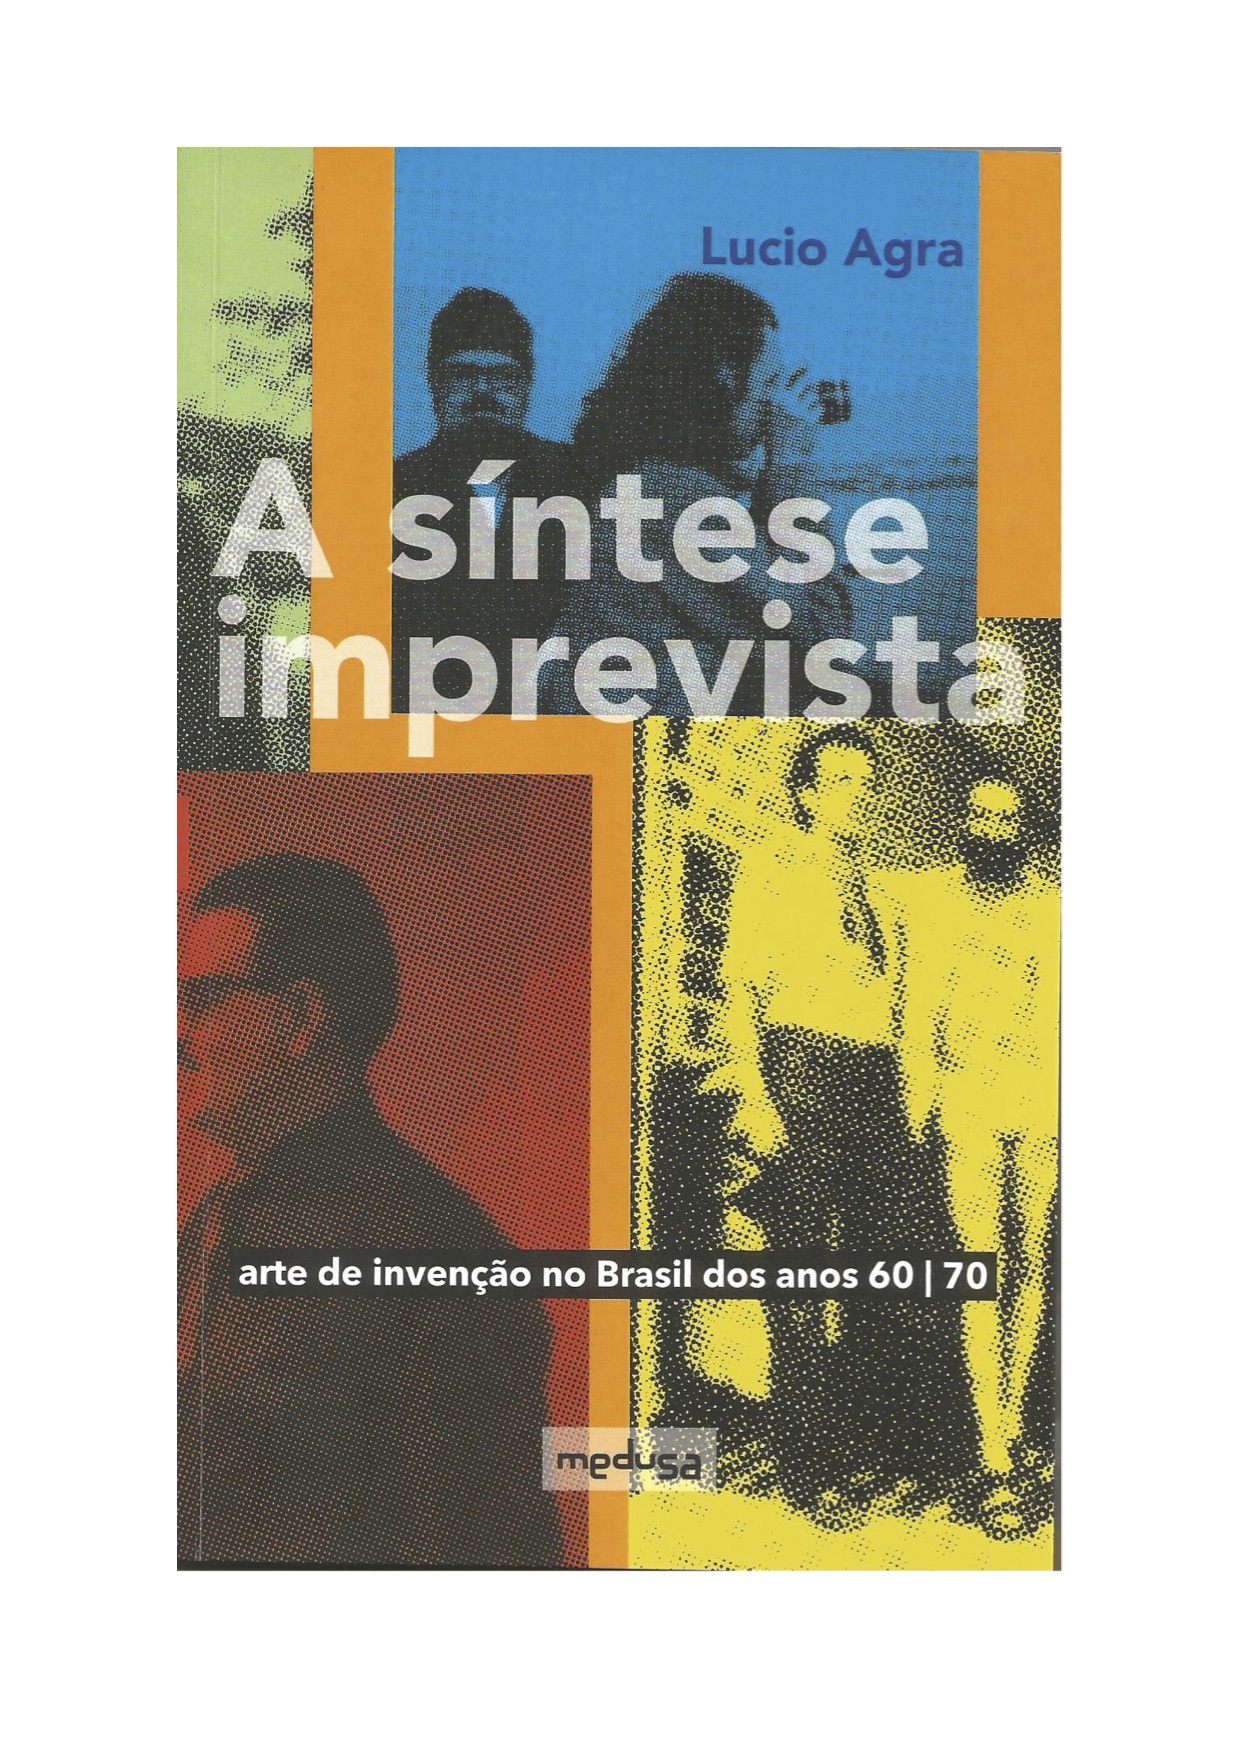 Capa do livro Agra, L. A síntese imprevista – arte de invenção no Brasil dos anos 60/70 . Curitiba, Ed. Medusa, 2022.